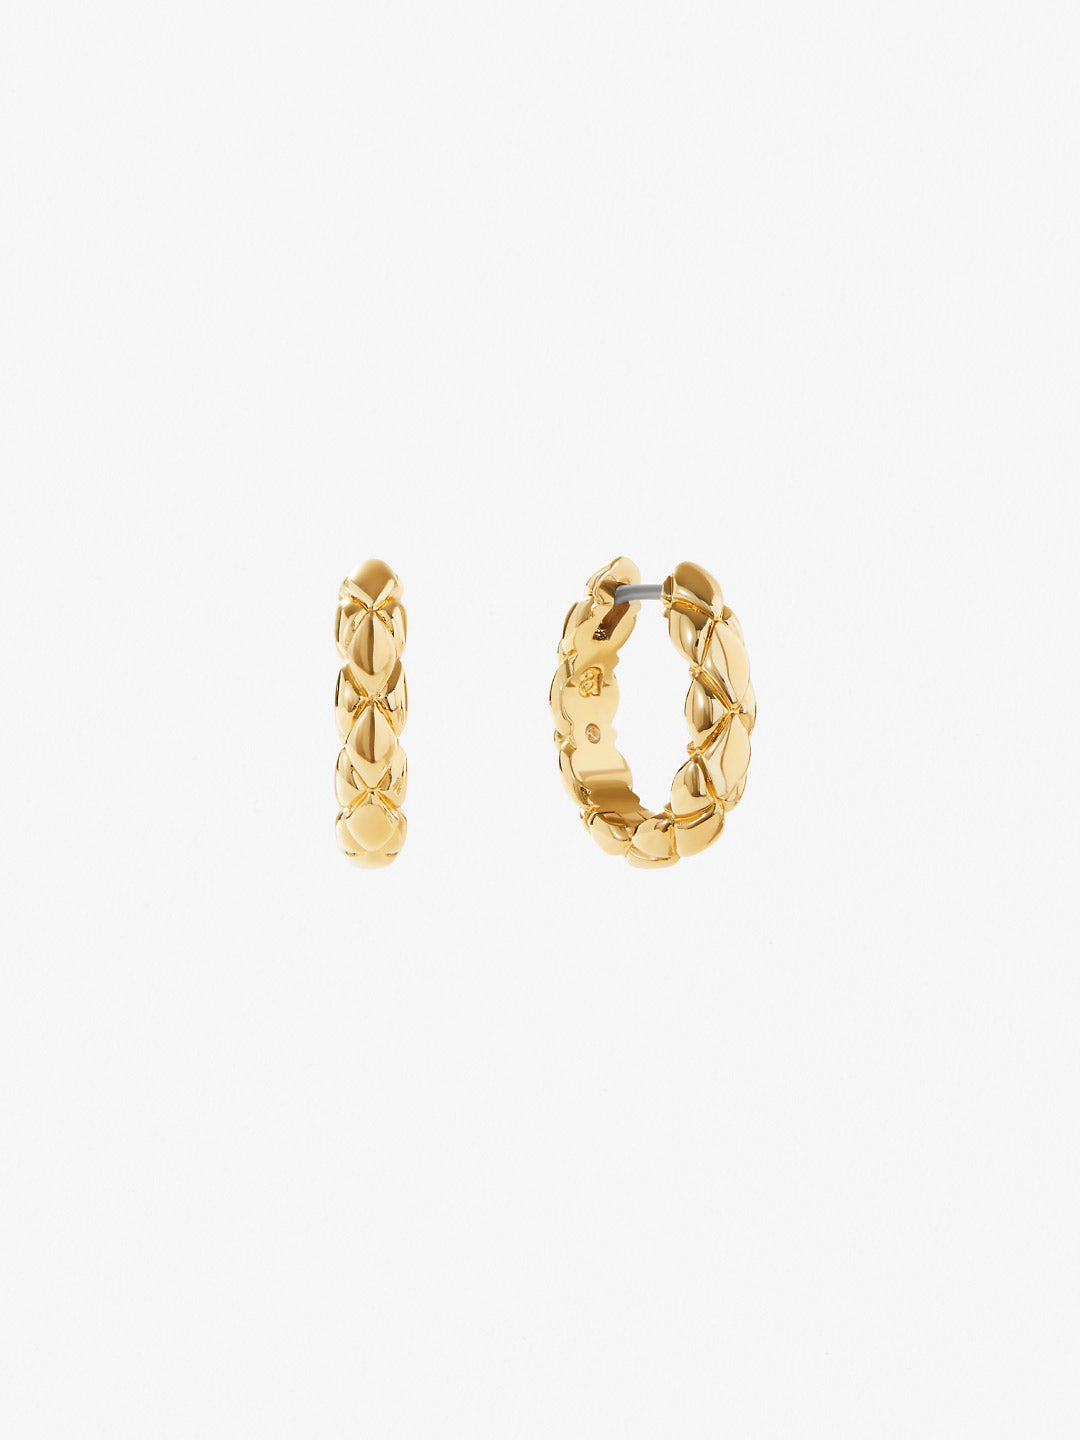 Ana Luisa Jewelry Earrings Medium Hoops Medium Quilted Hoops Alessa Medium Gold